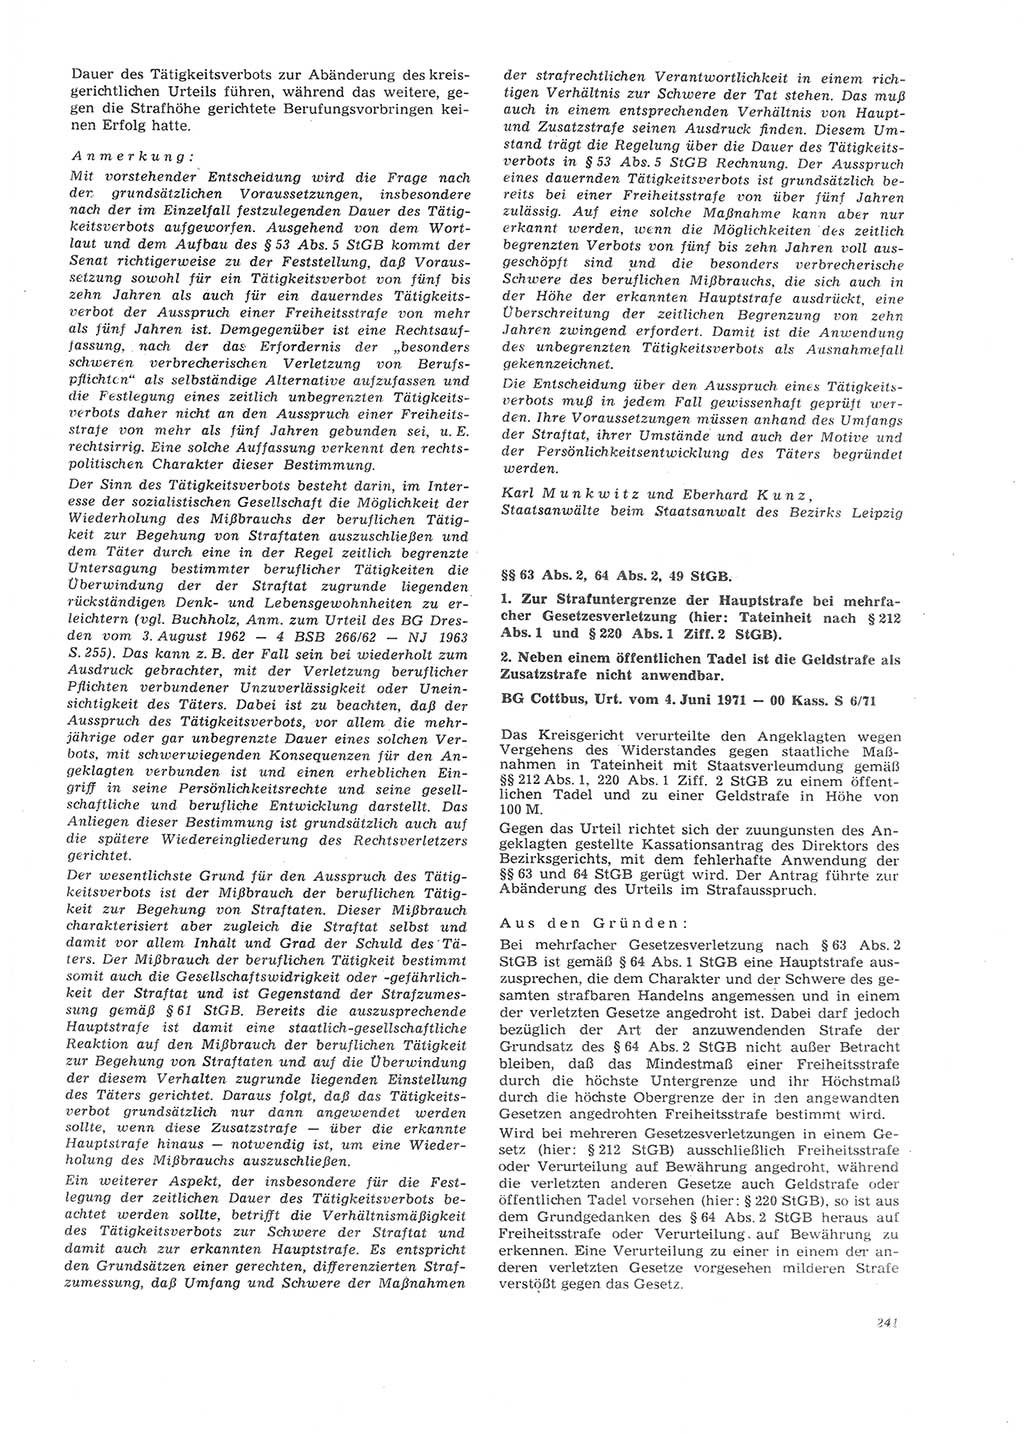 Neue Justiz (NJ), Zeitschrift für Recht und Rechtswissenschaft [Deutsche Demokratische Republik (DDR)], 26. Jahrgang 1972, Seite 241 (NJ DDR 1972, S. 241)